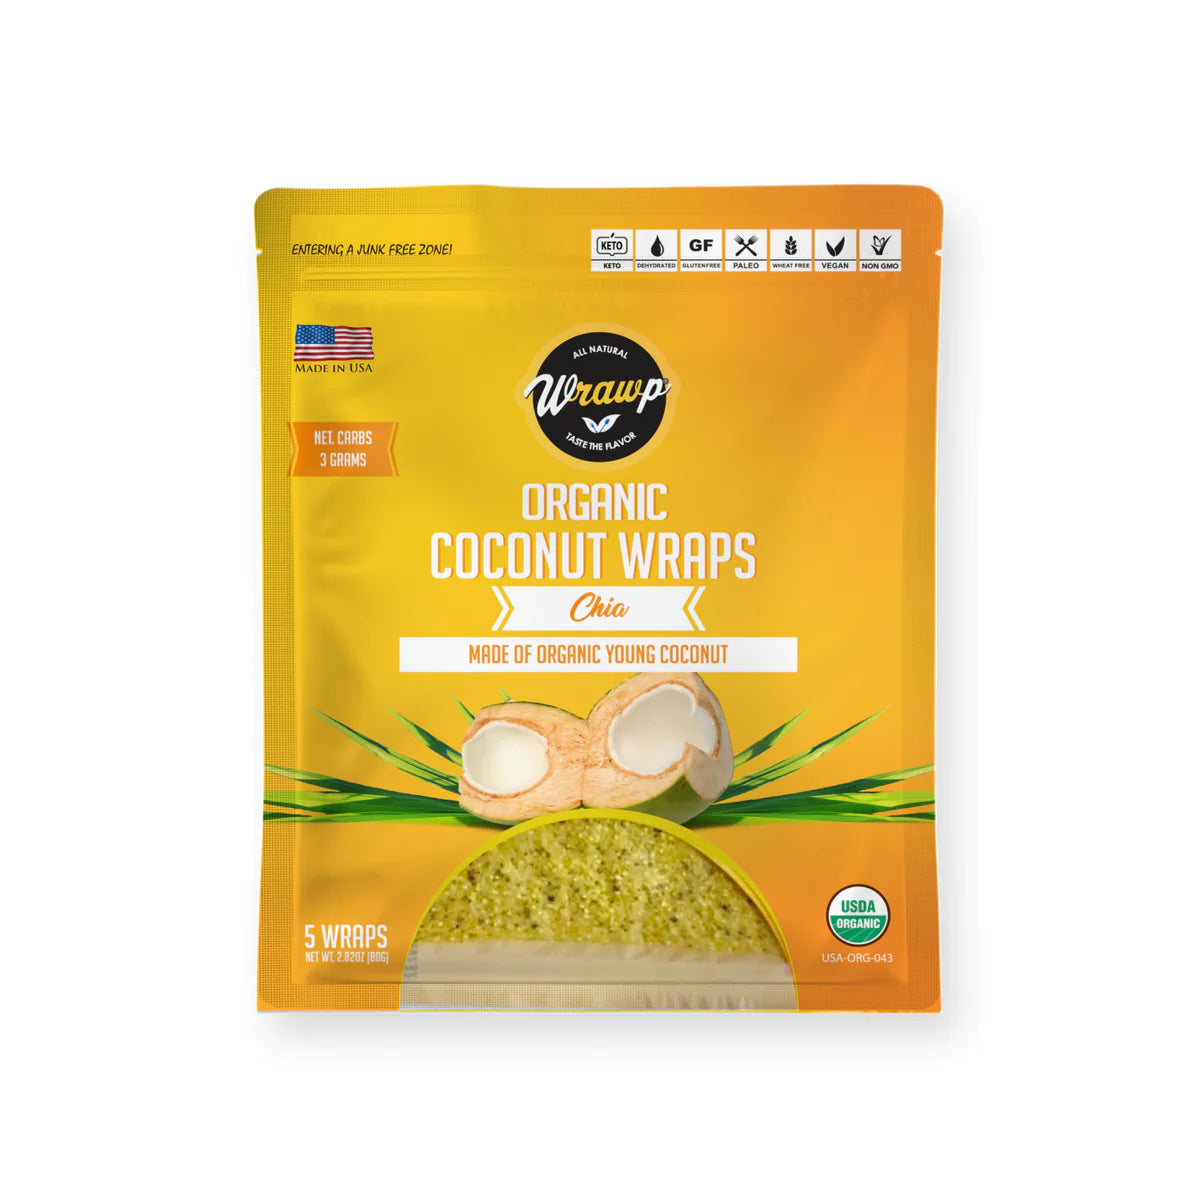 WrawP Coco Nori wrap - Chia (80g - 5 wraps)